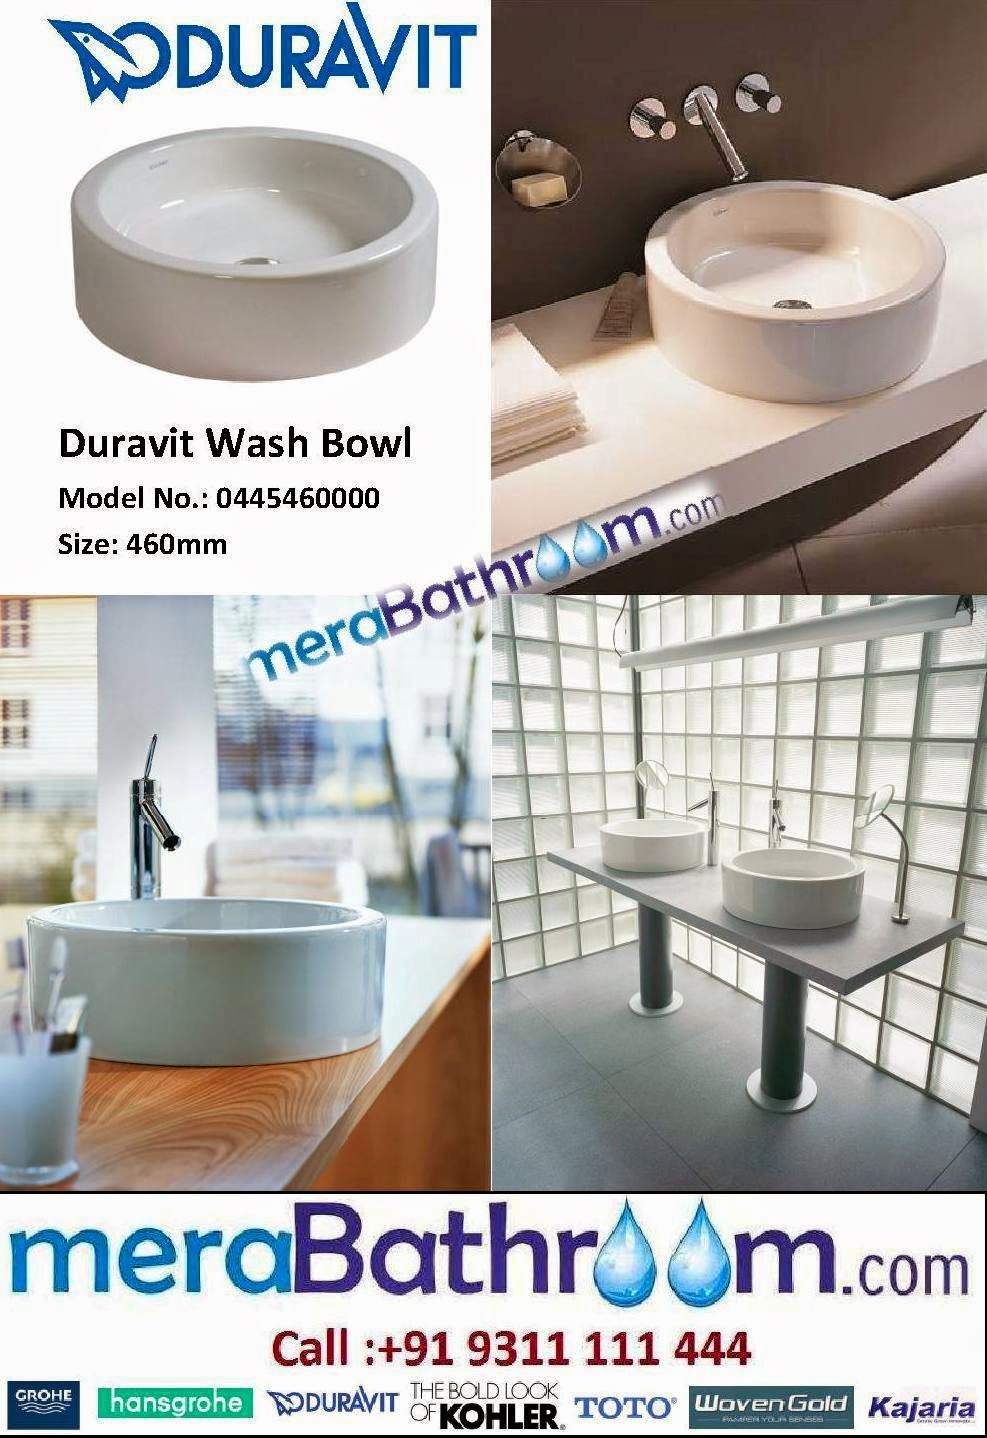  Duravit Starck 1 Wash Bowl- 0445460000